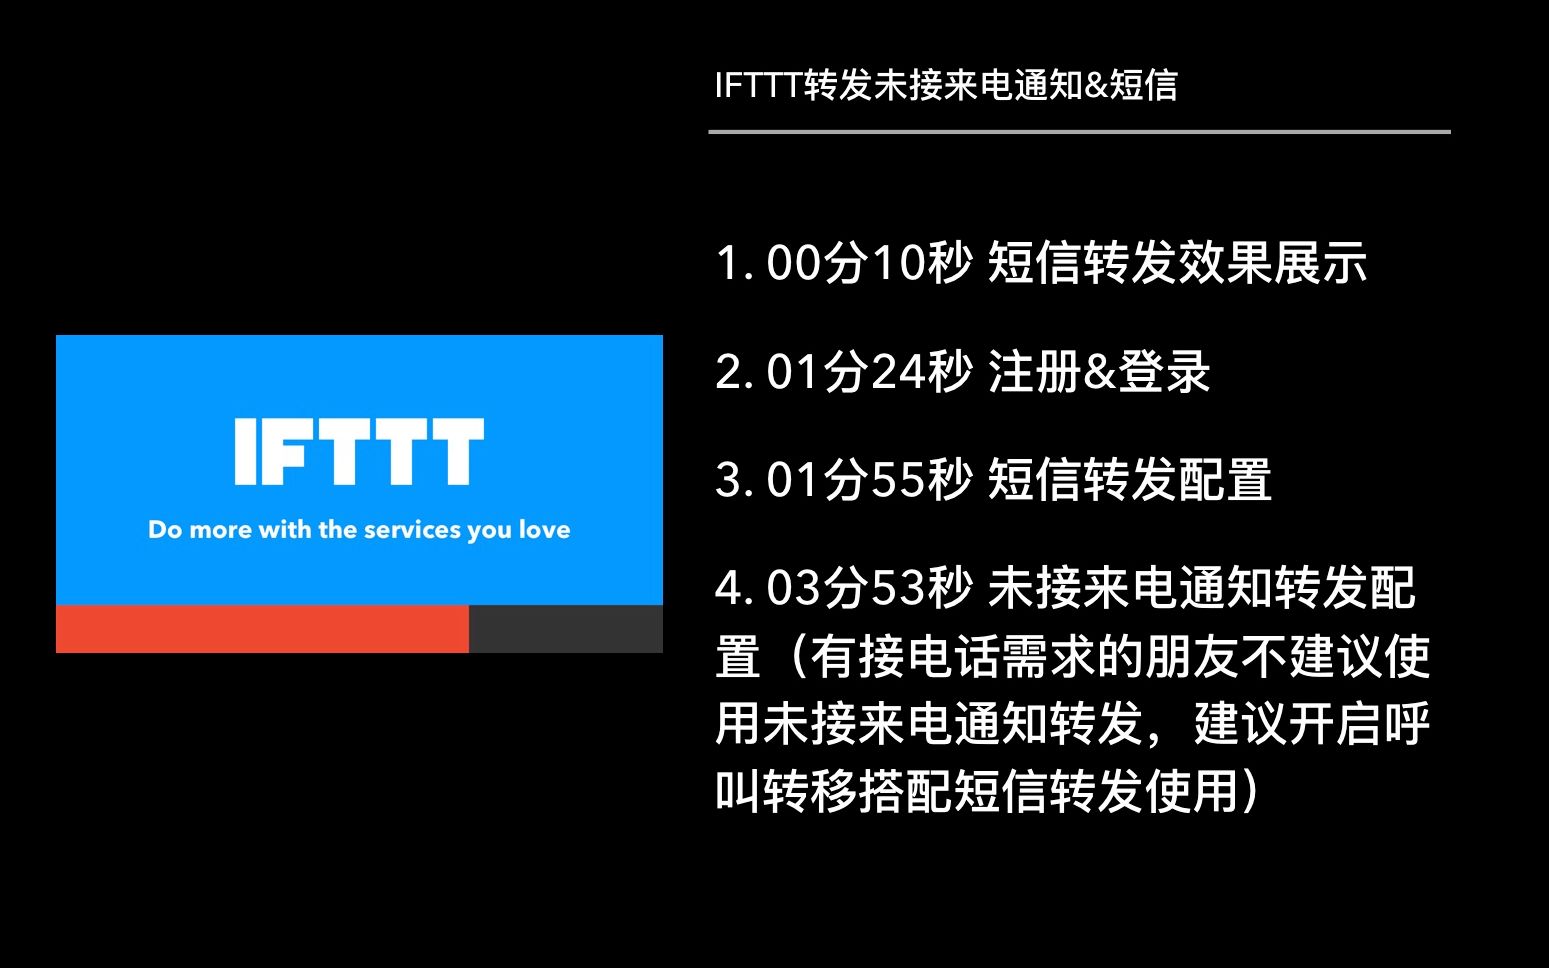 IFTTT在外远程接收家中手机电话和短信 让你只带一个手机轻松出门 使用IFTTT转发未接来电通知&短信